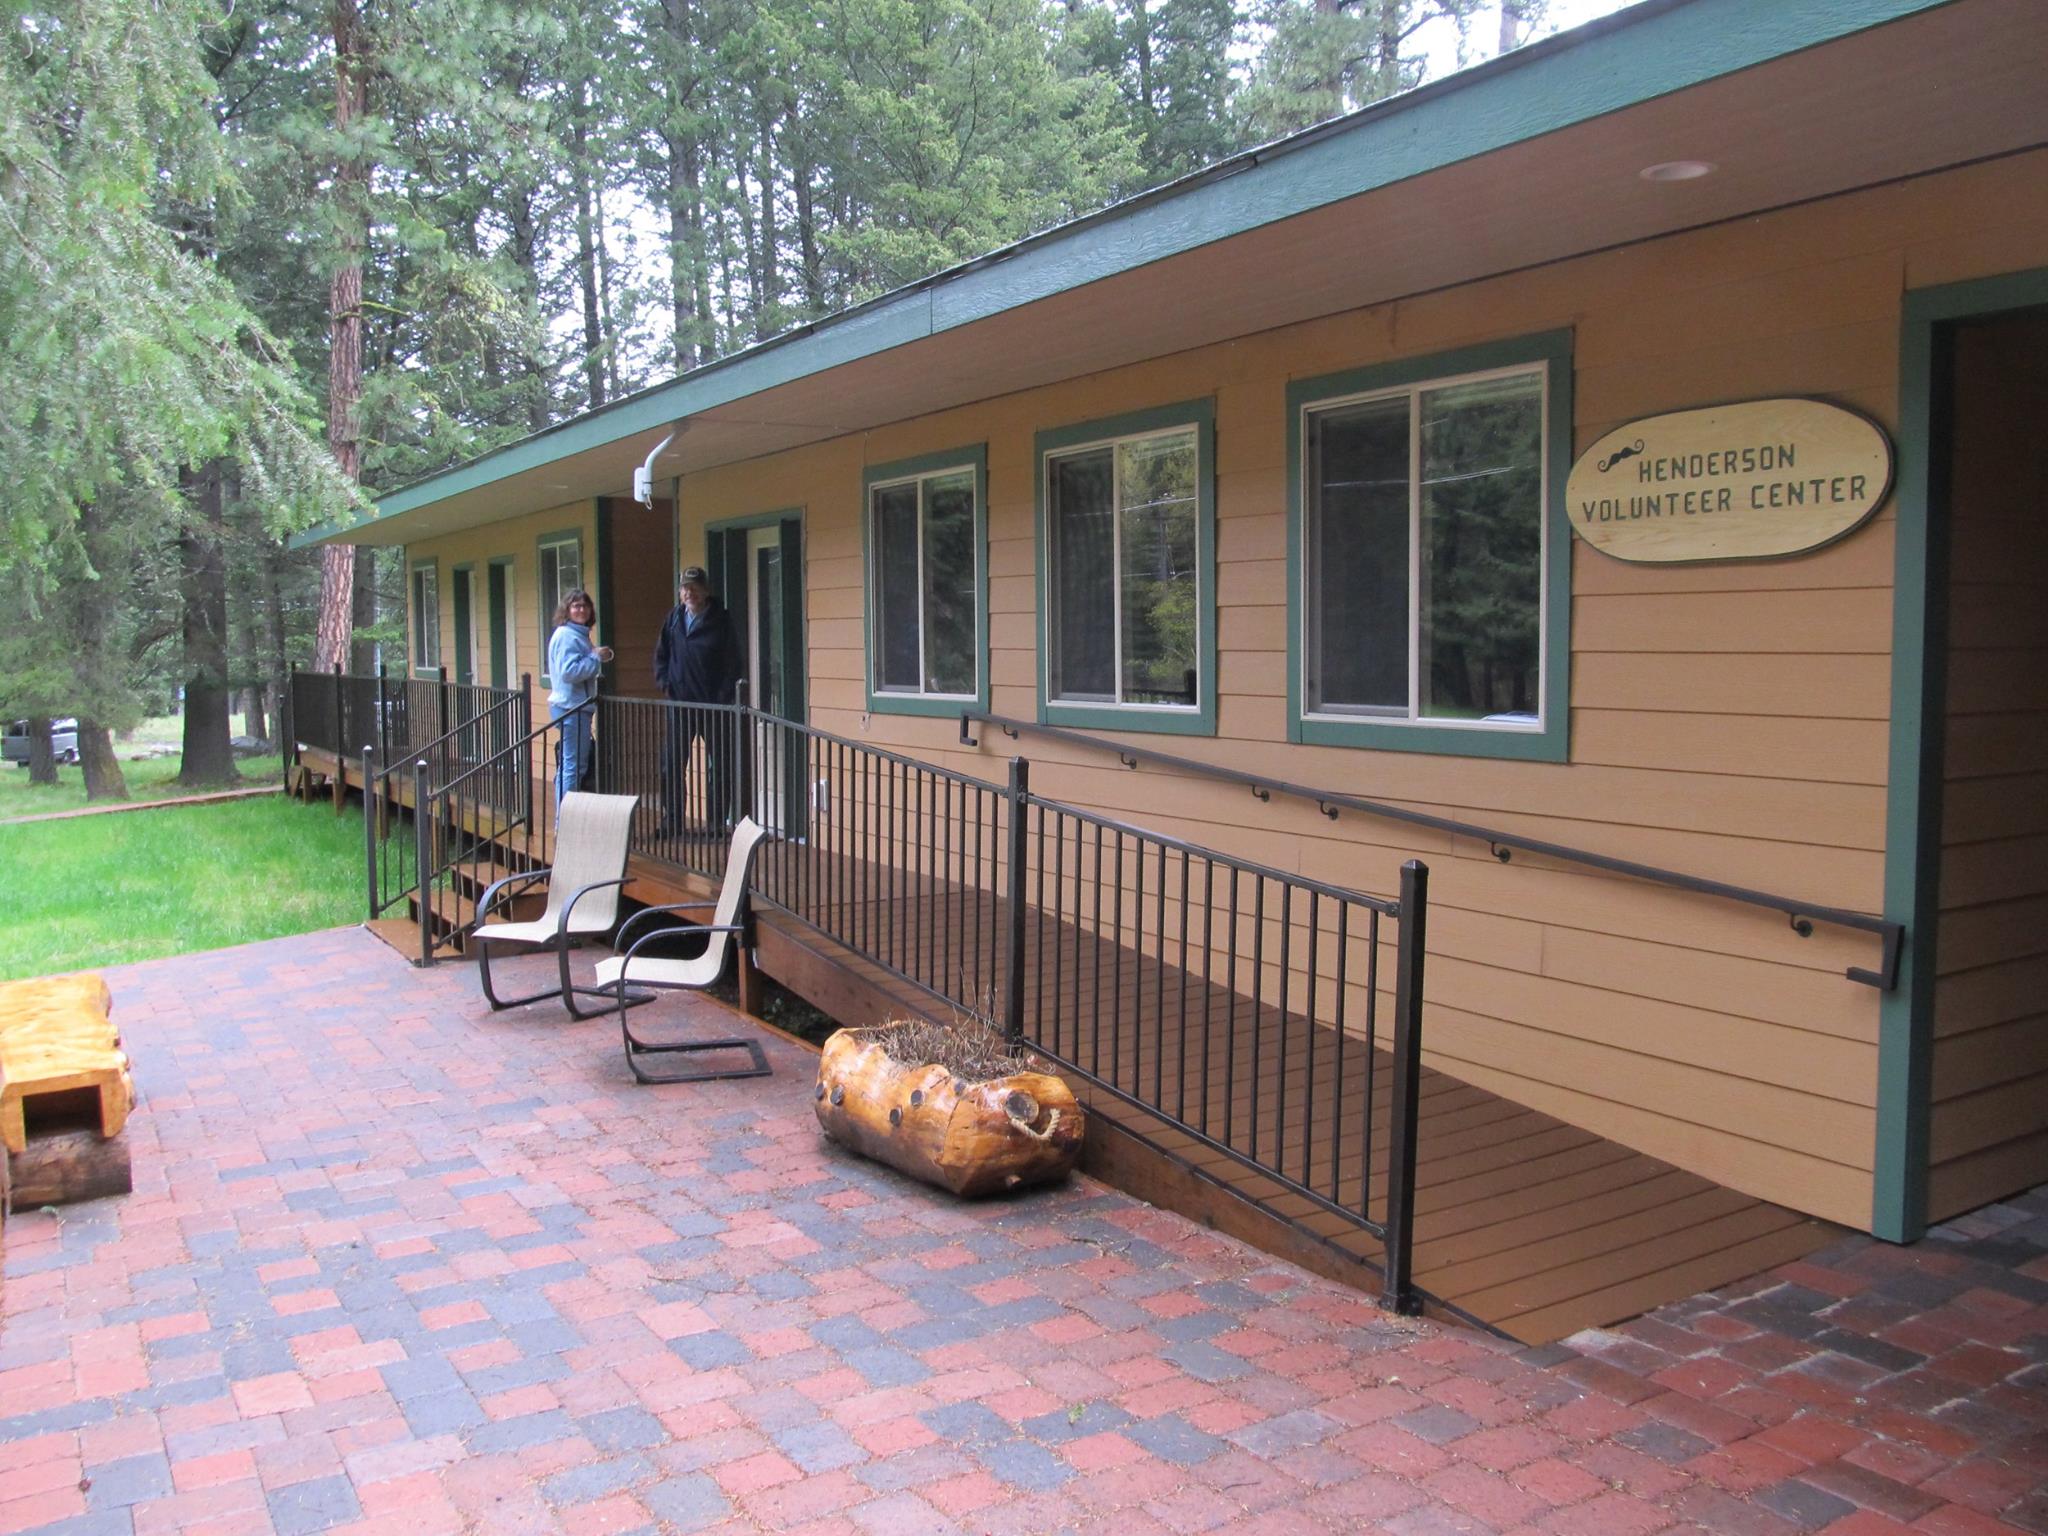 Wallowa Lake Camp & Retreat Center